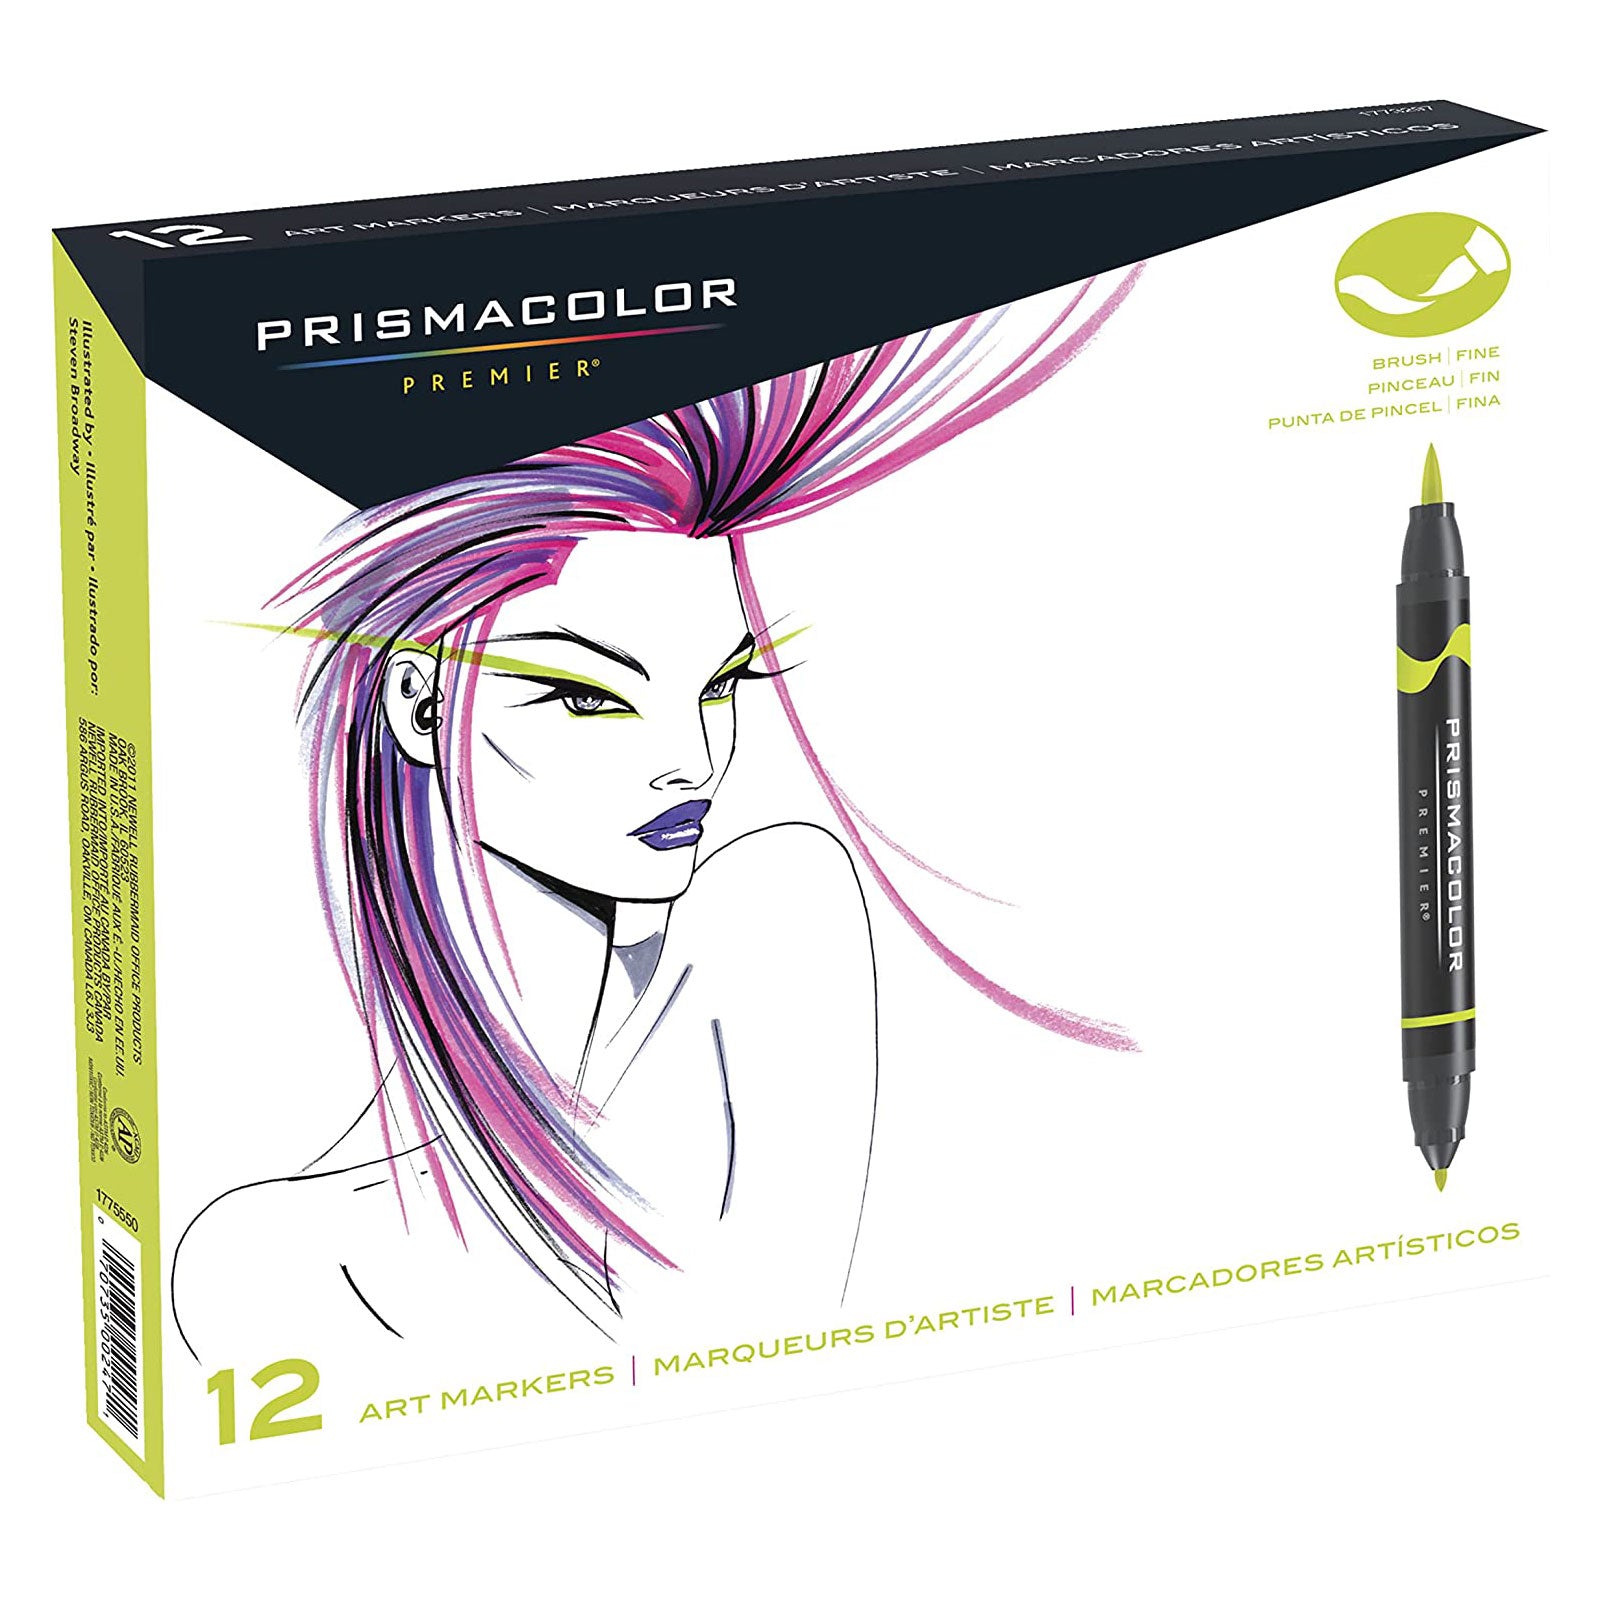 Prismacolor Art Marker Set of 24 with Case